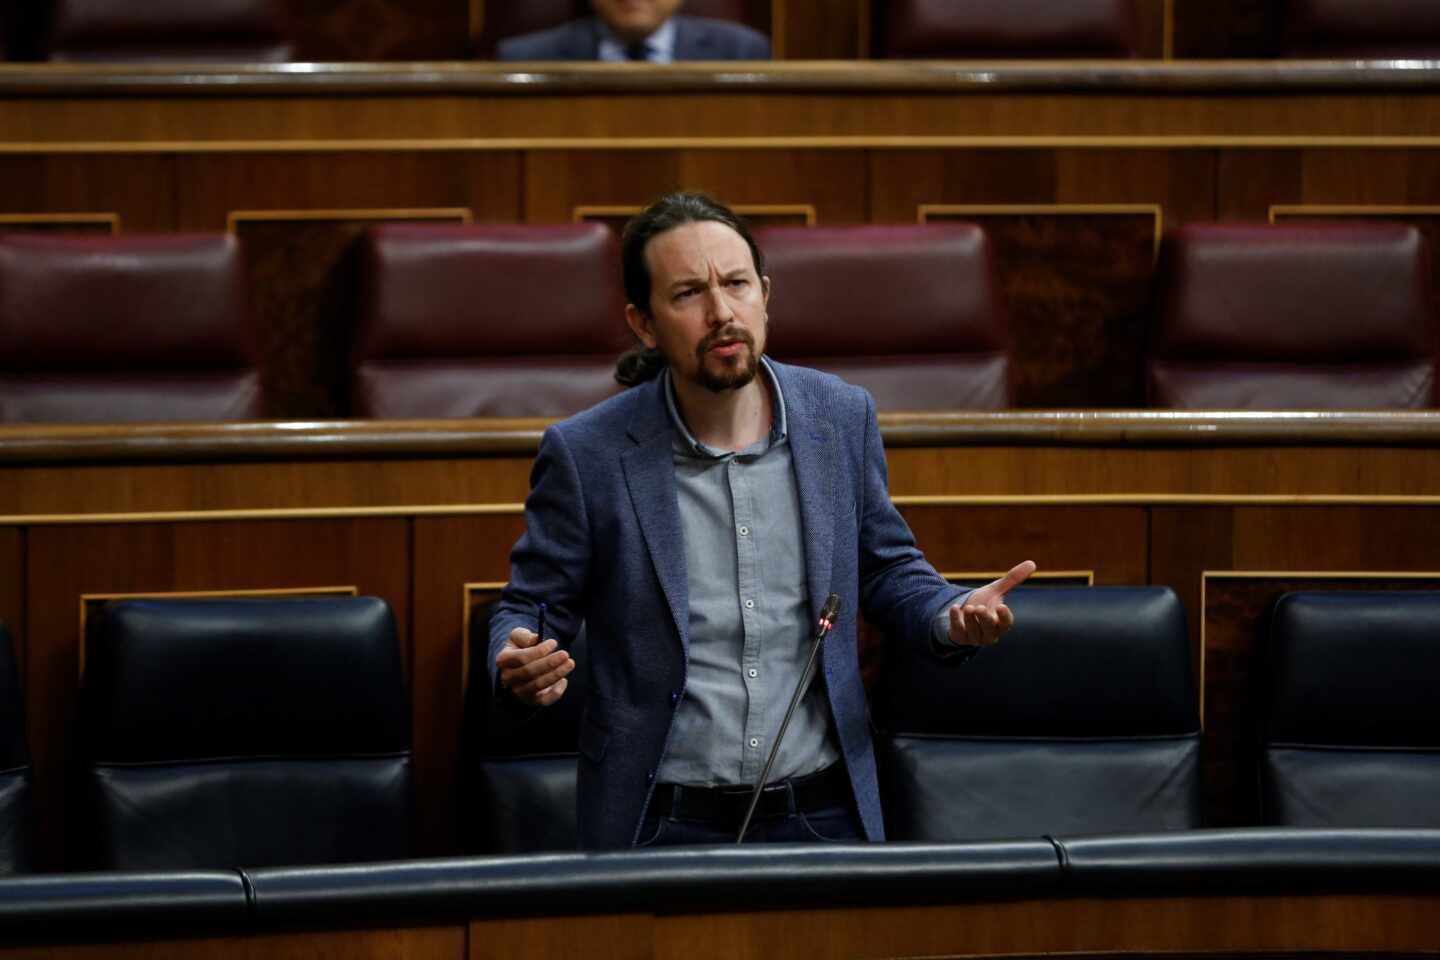 Iglesias, a Vox: "España se quitará de en medio la inmundicia a la que ustedes representan"